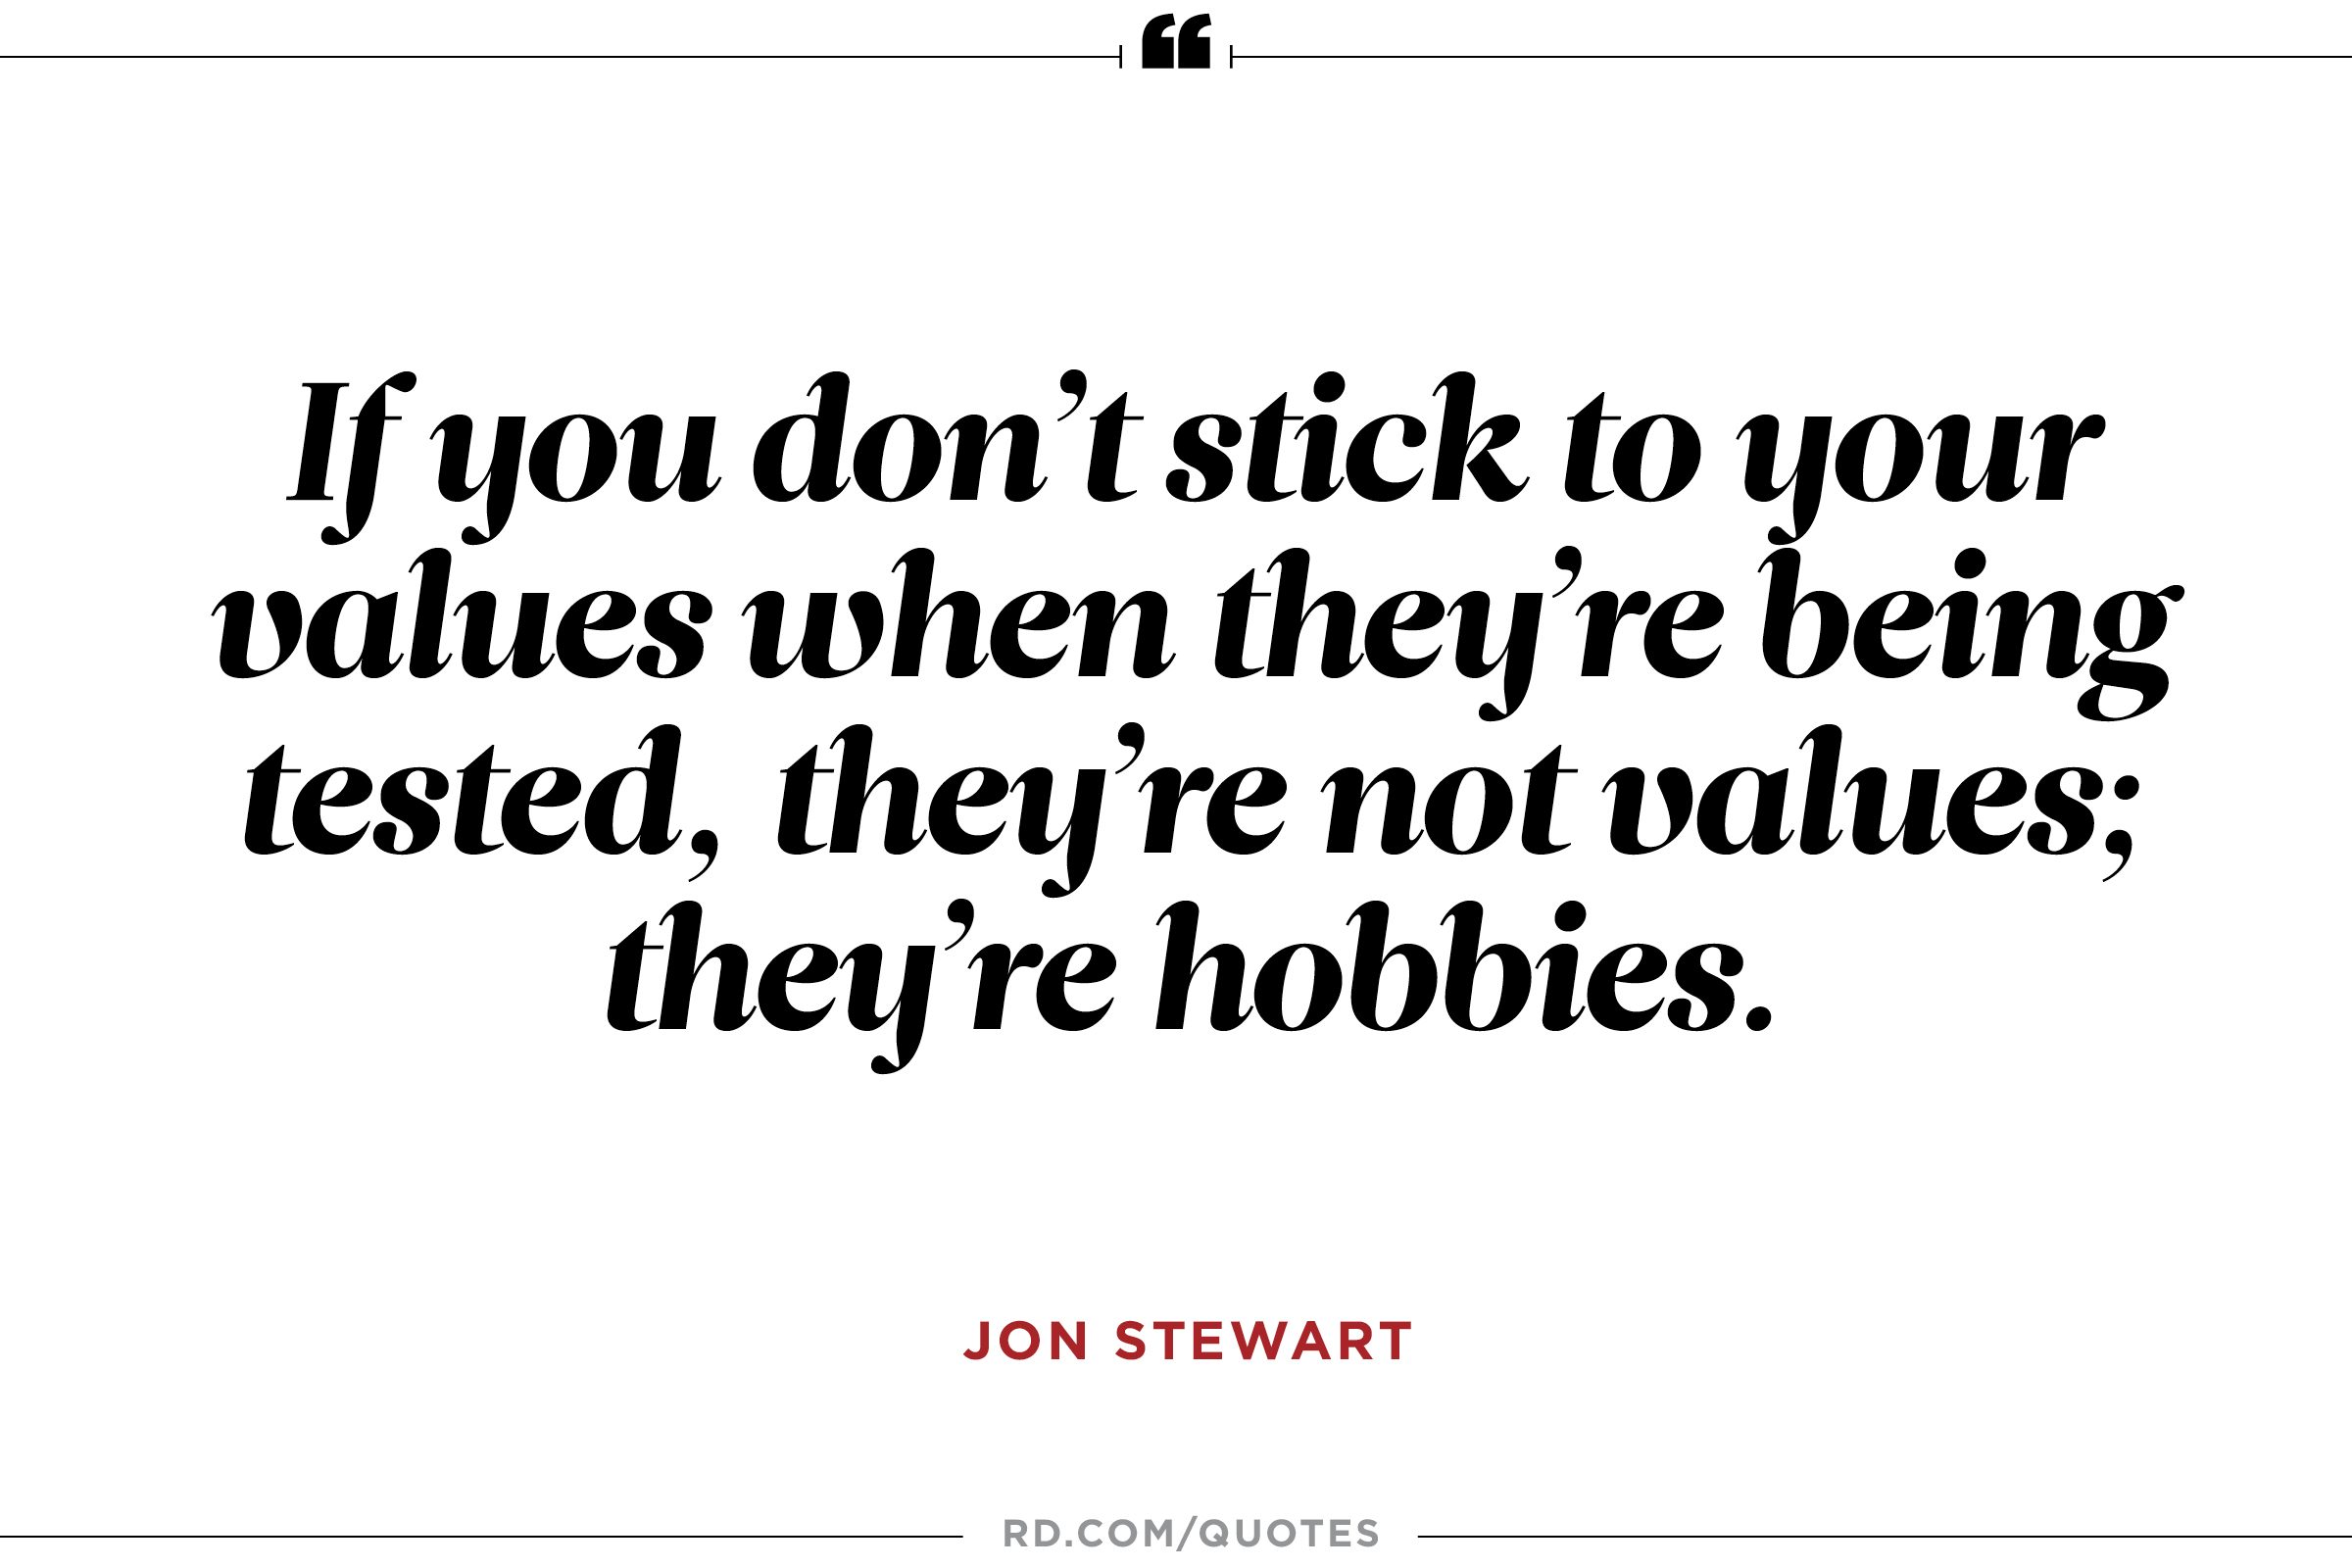 Jon Stewart on Values